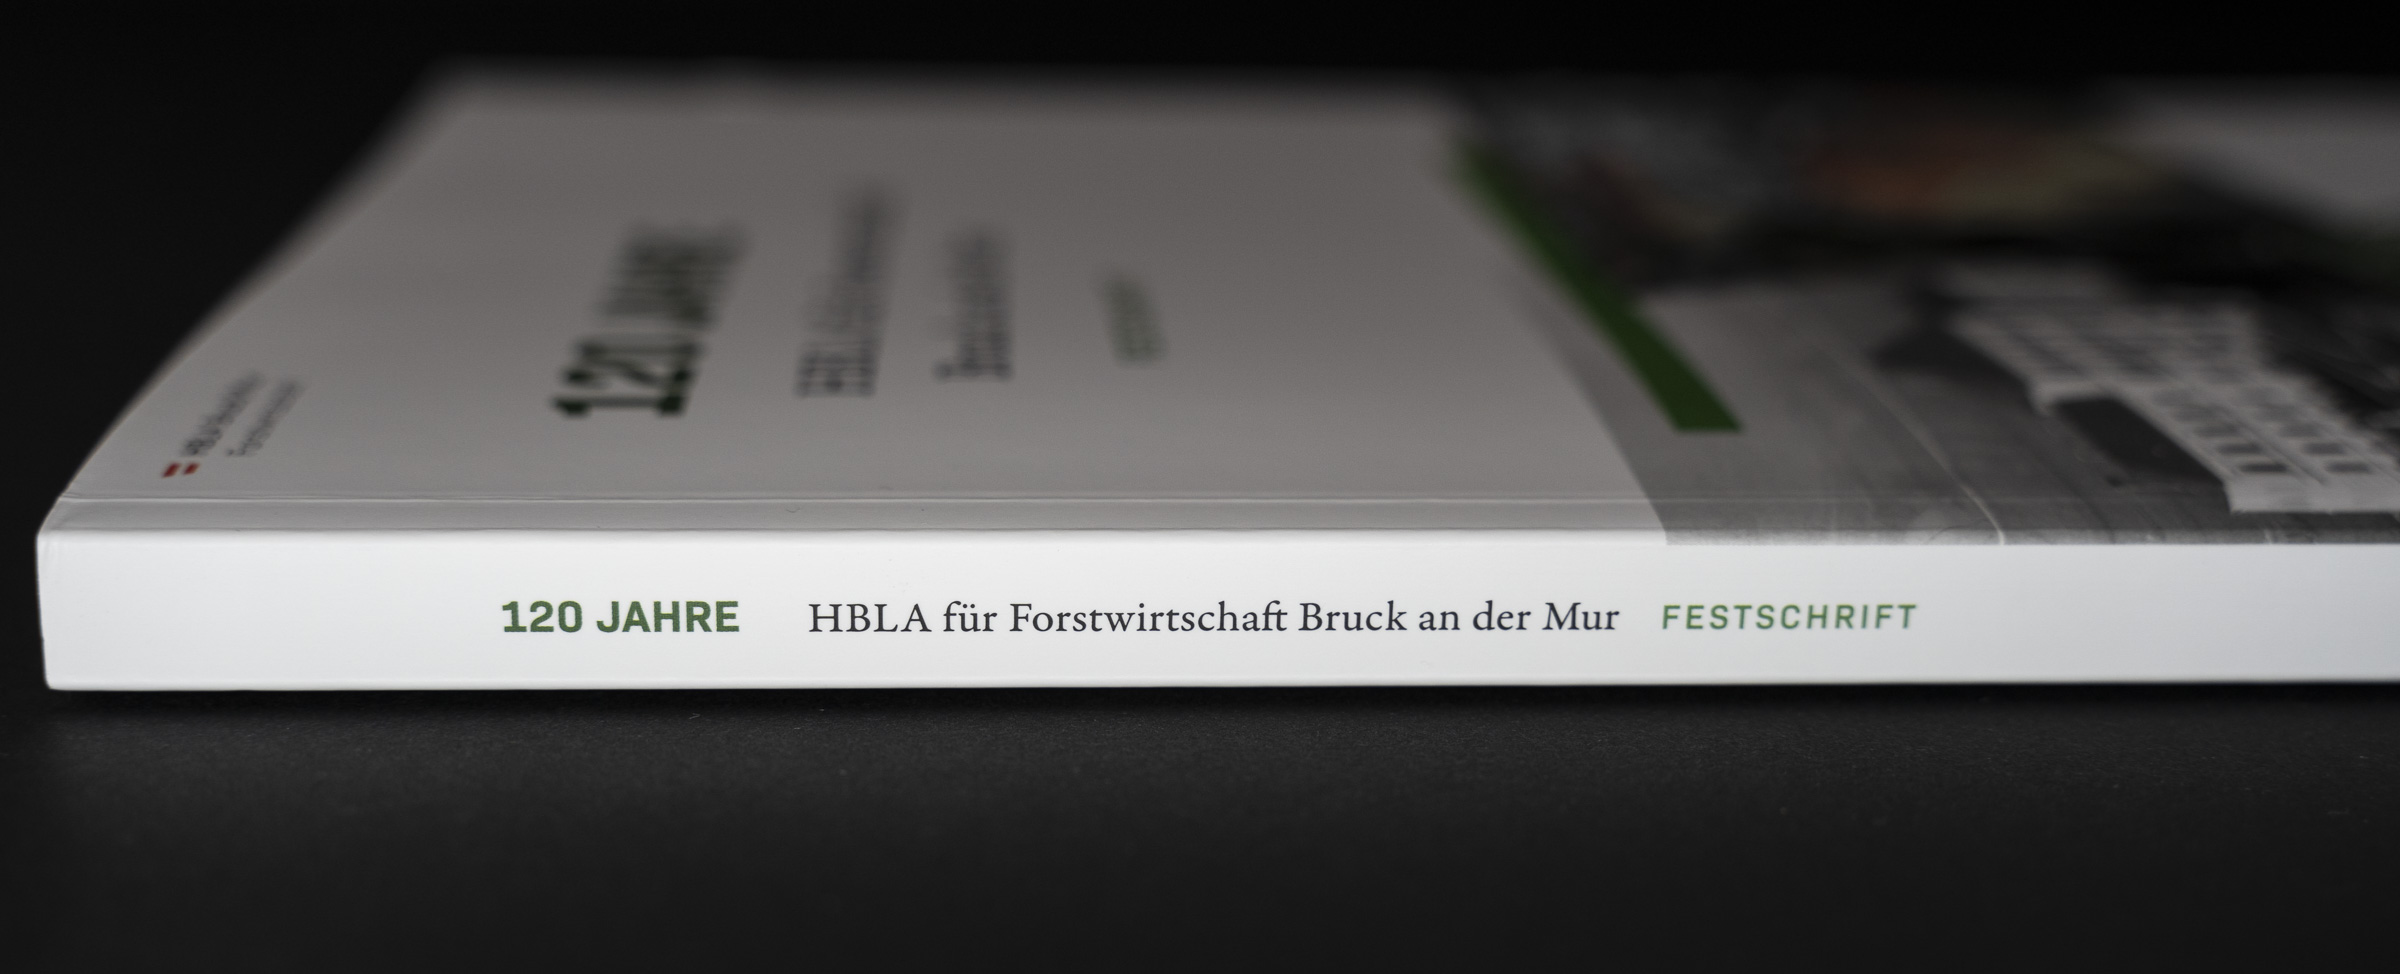 Festschrift HBLA für Forstwirtschaft